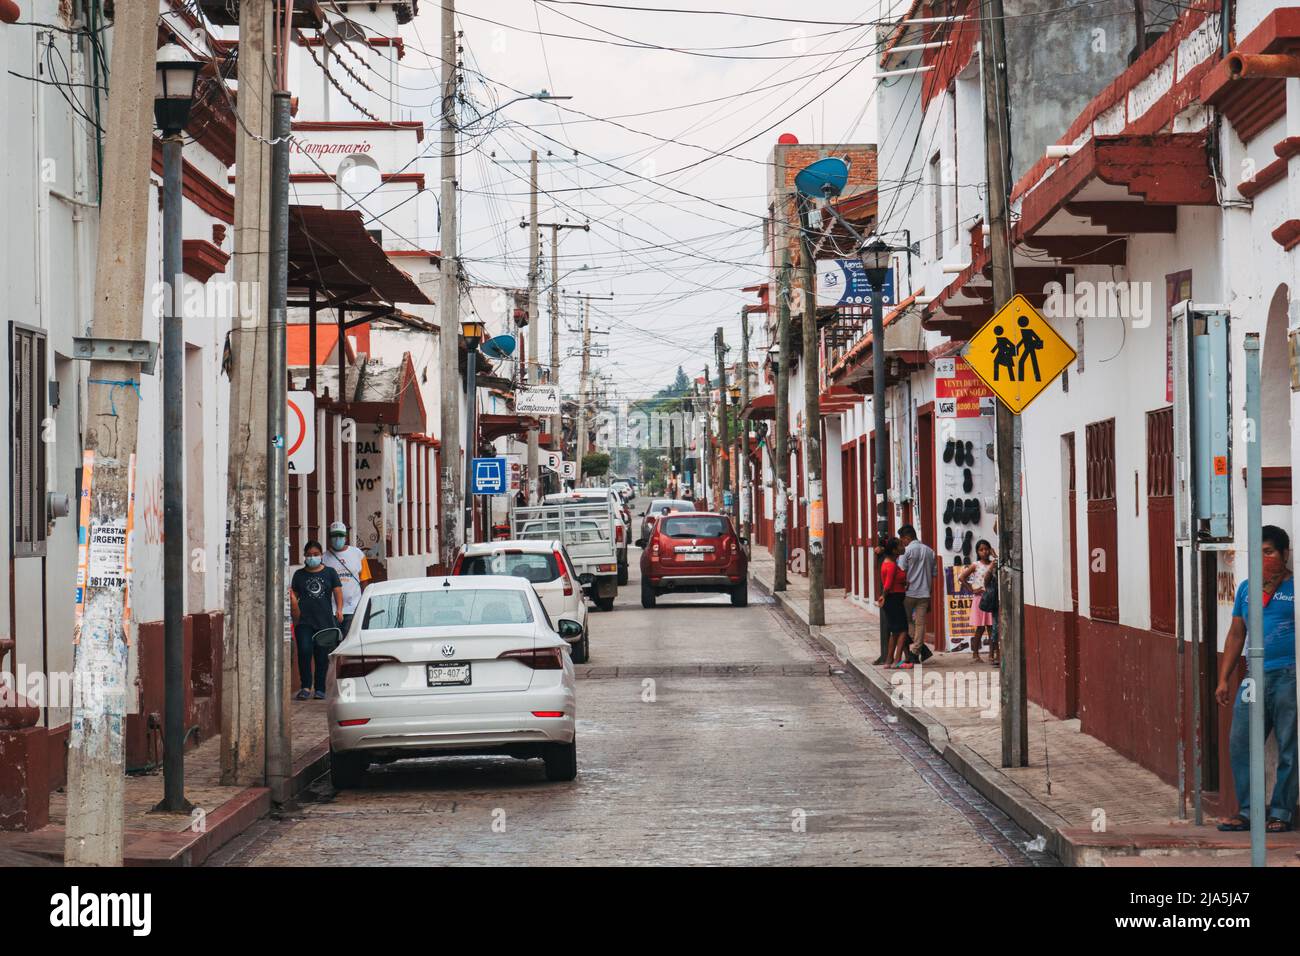 Une rue de Chiapa de Corzo, l'une des plus anciennes villes coloniales espagnoles de l'État du Chiapas, au Mexique Banque D'Images